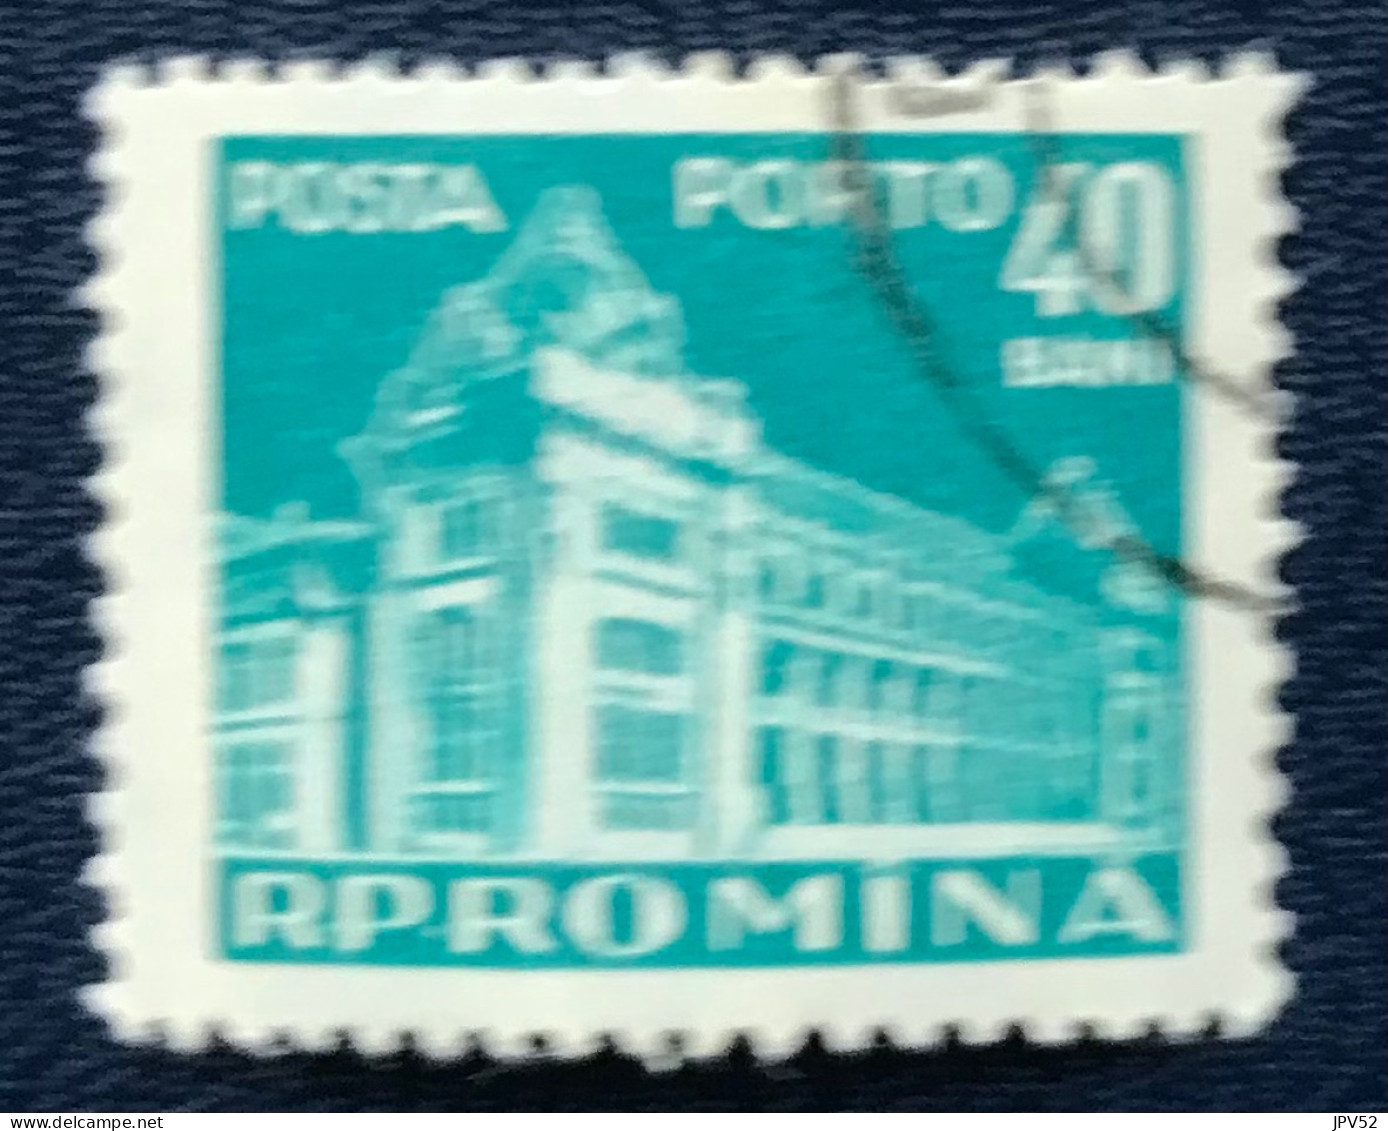 Romana - Roemenië - C14/55 - 1957 - (°)used - Michel 105 - Postkantoor - Impuestos